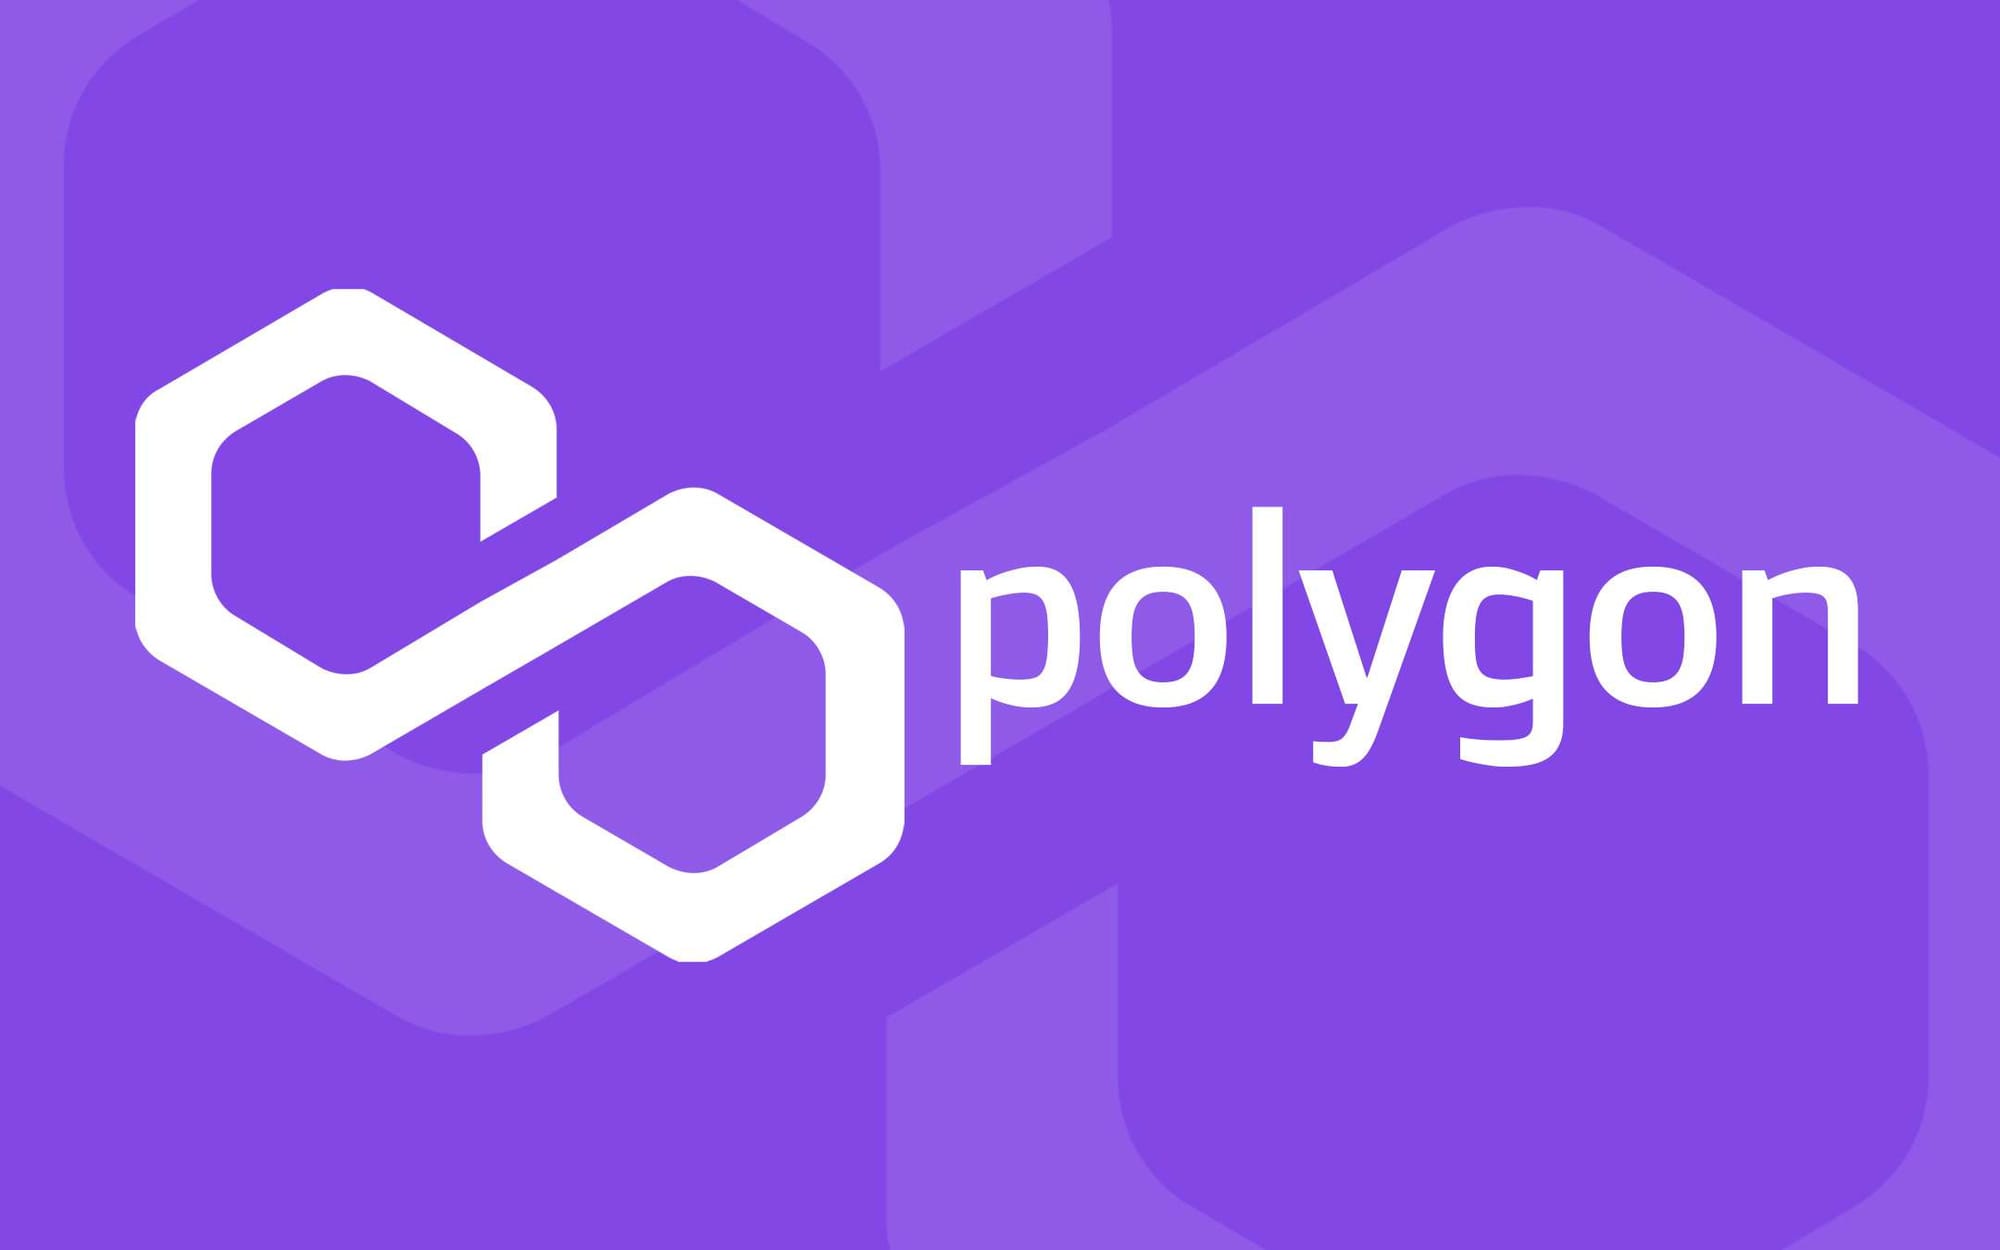 "Преодоление границ: Polygon запускает 'Type 1 Prover', революционный продукт для экосистемы Эфириума"